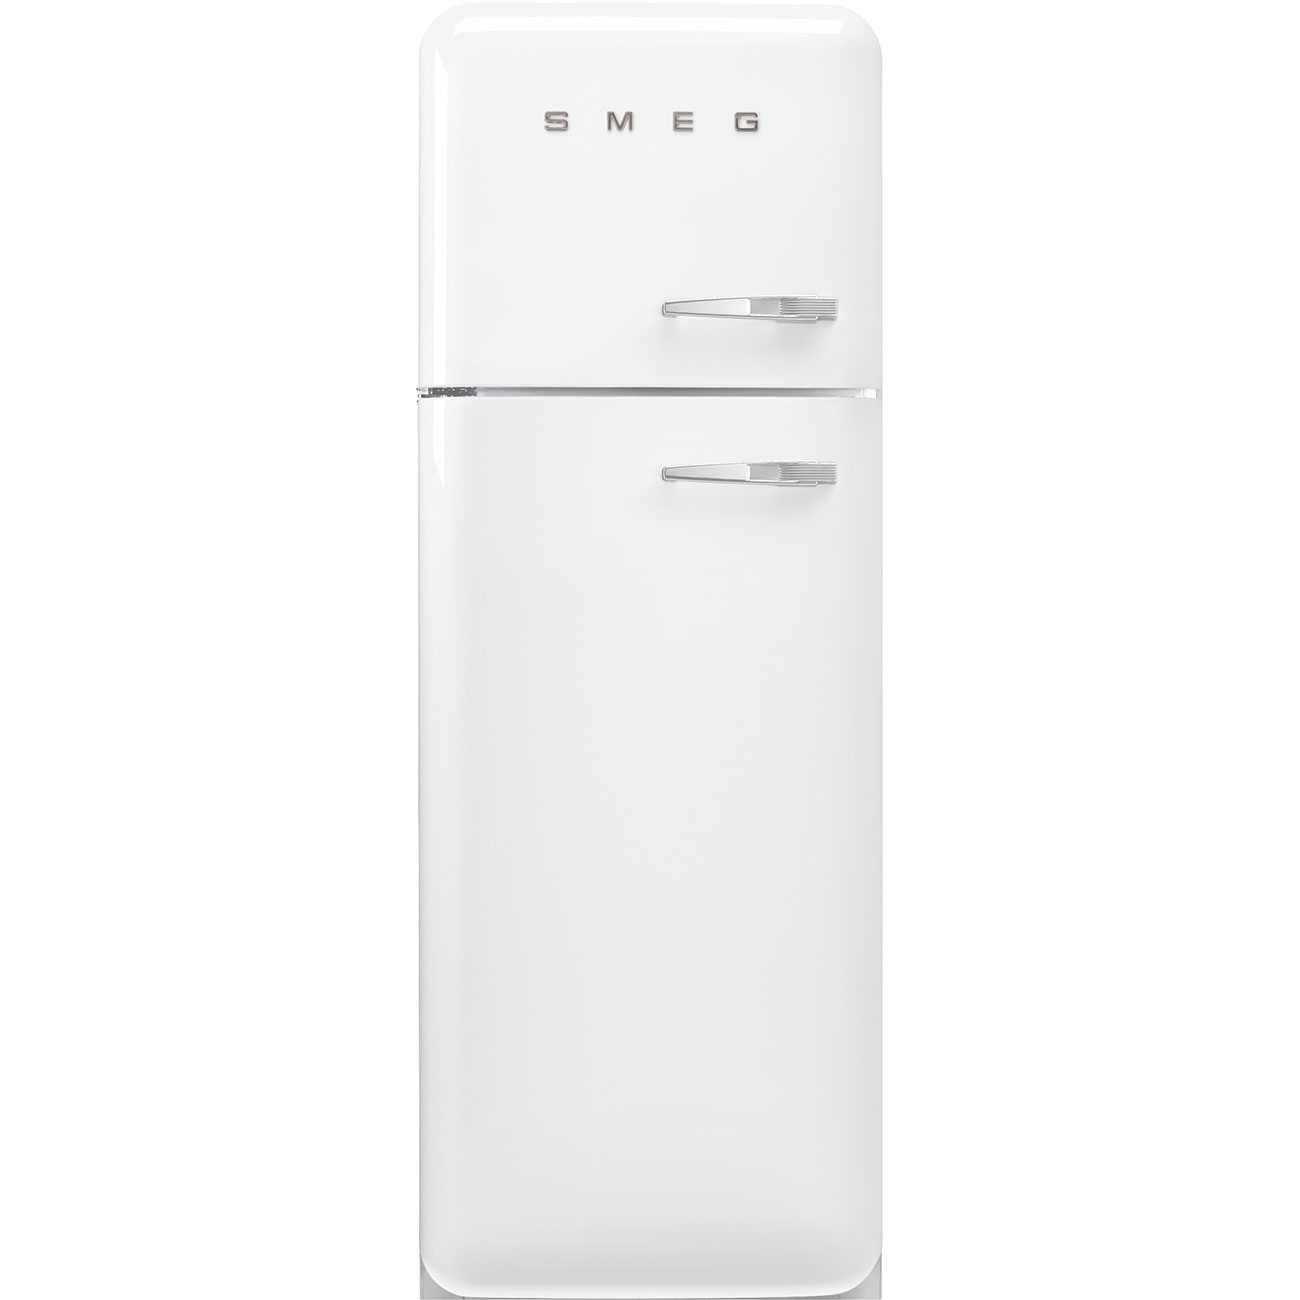 White refrigerator - Smeg_1